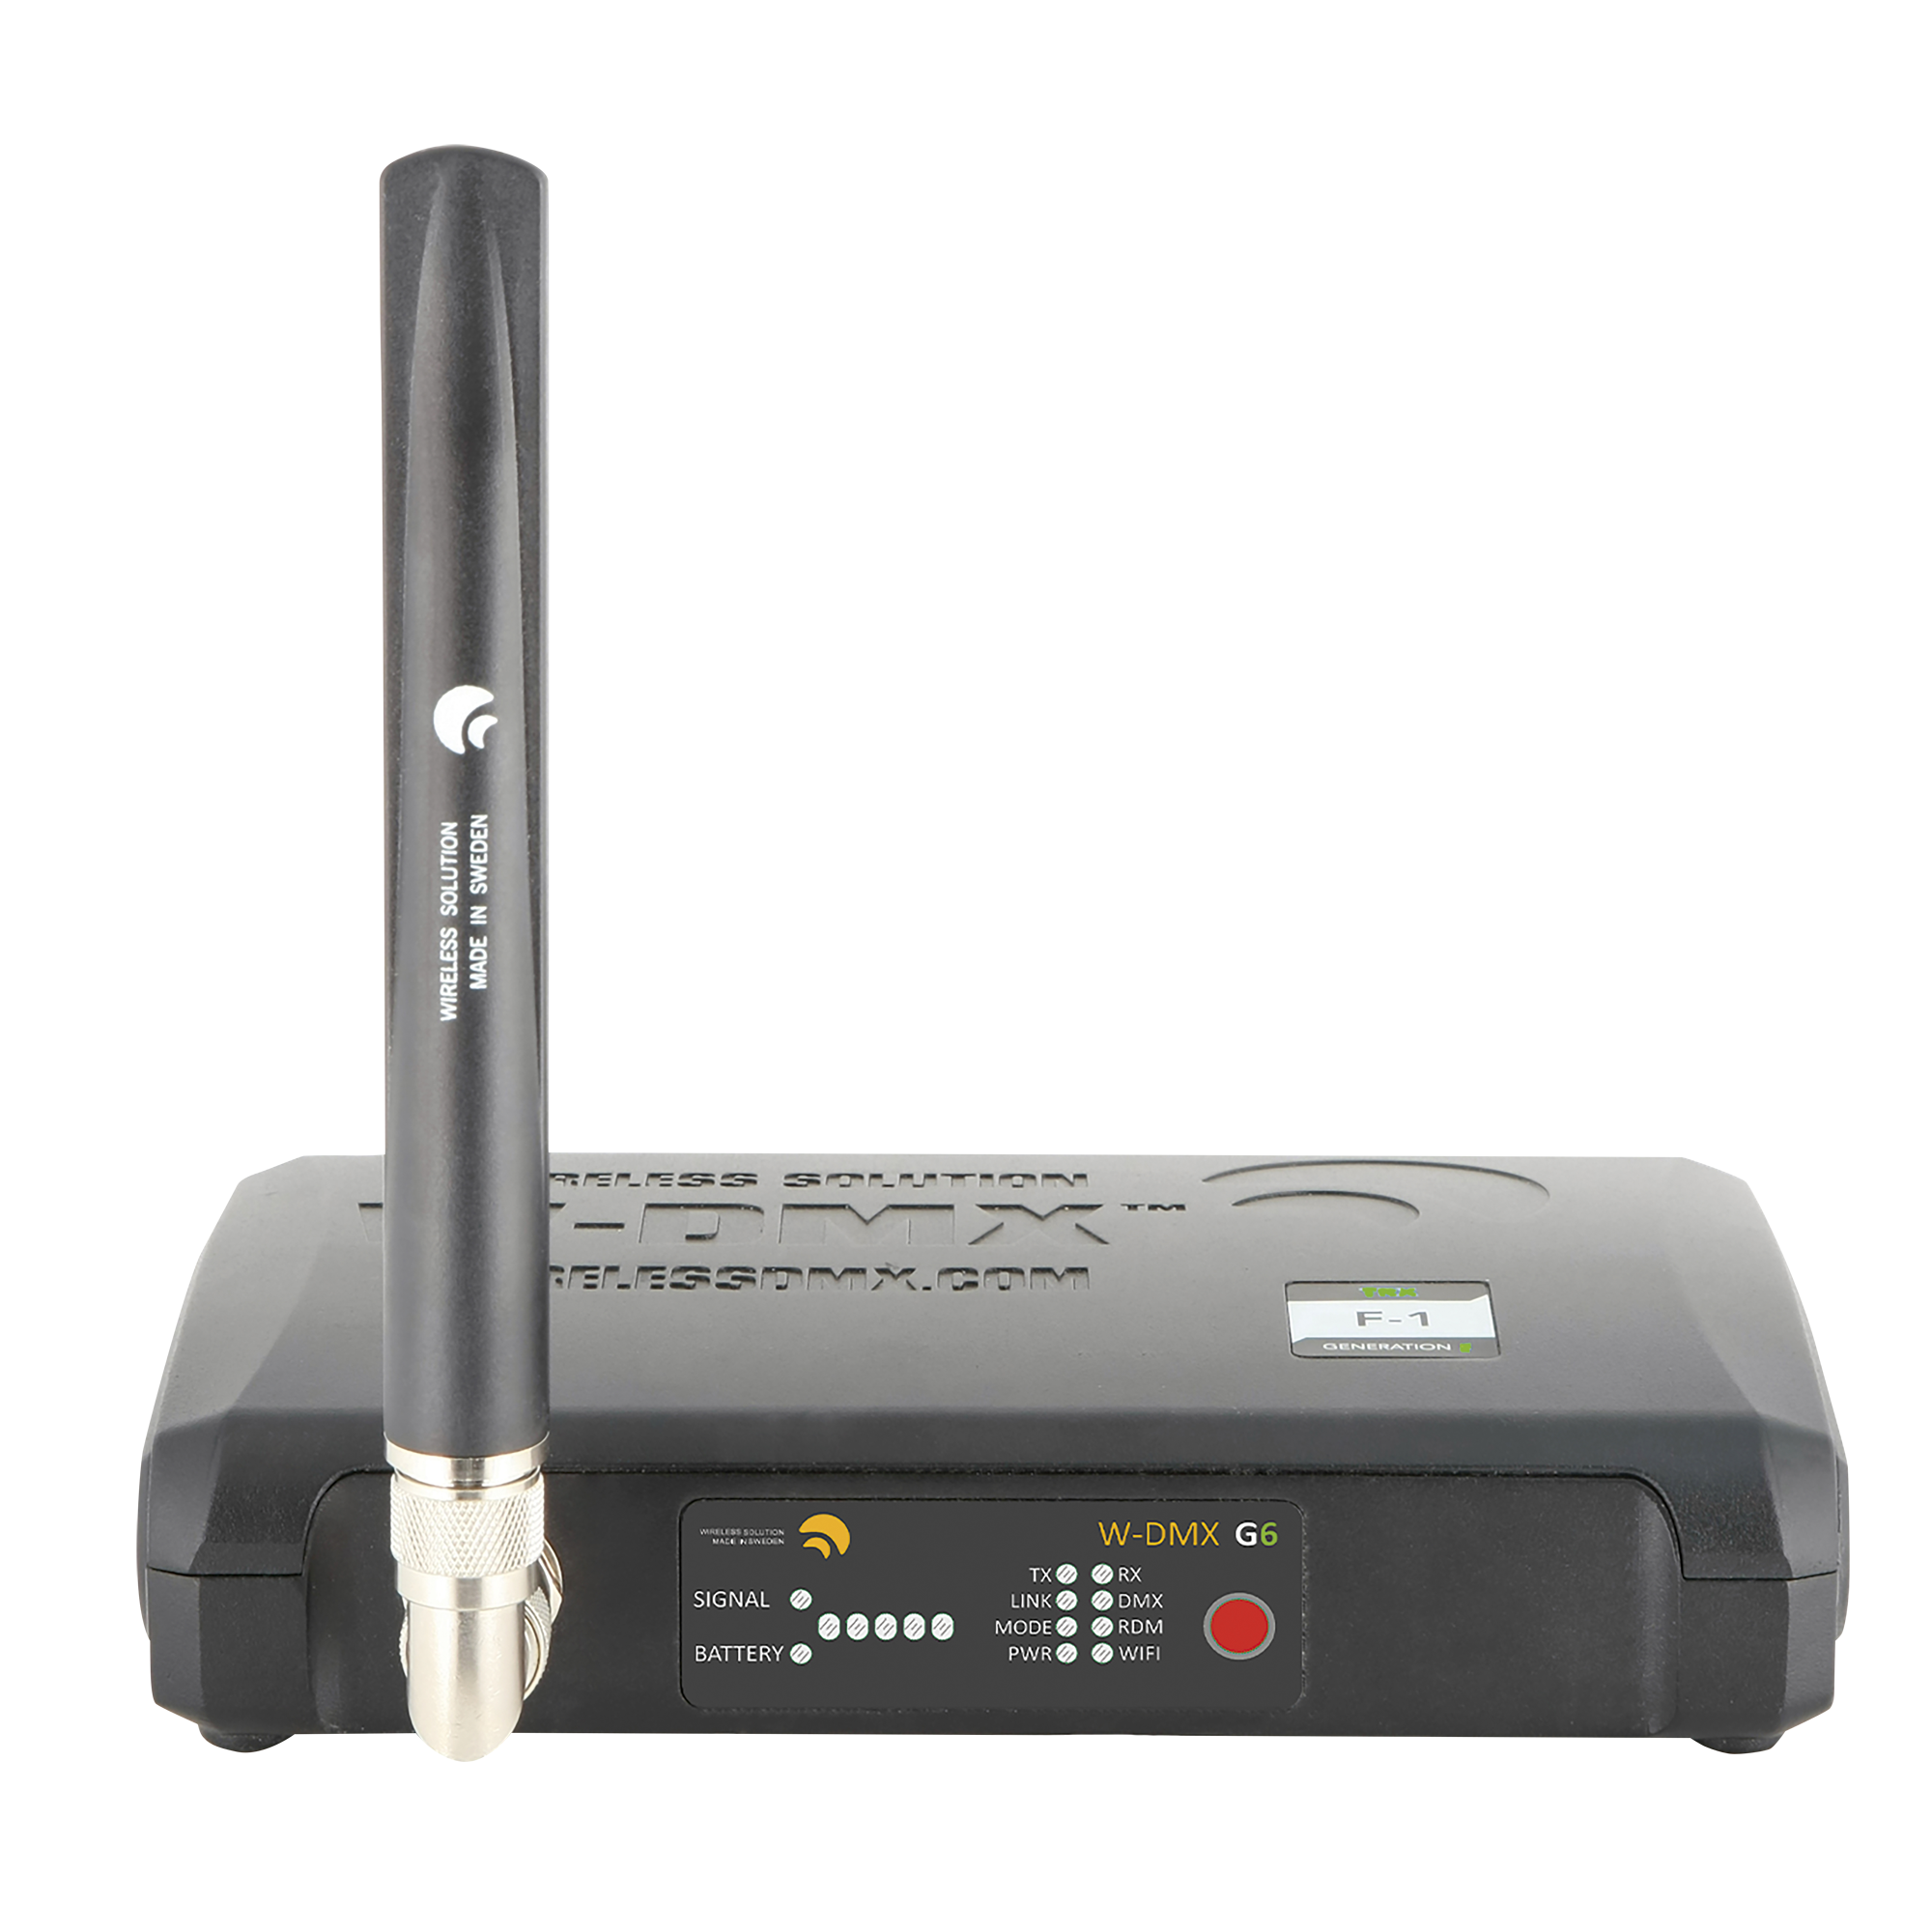 Wireless solution BlackBox F-1 G6 Transceiver Drahtloser DMX, ArtNet & Streaming ACN-Sender & -Empfänger